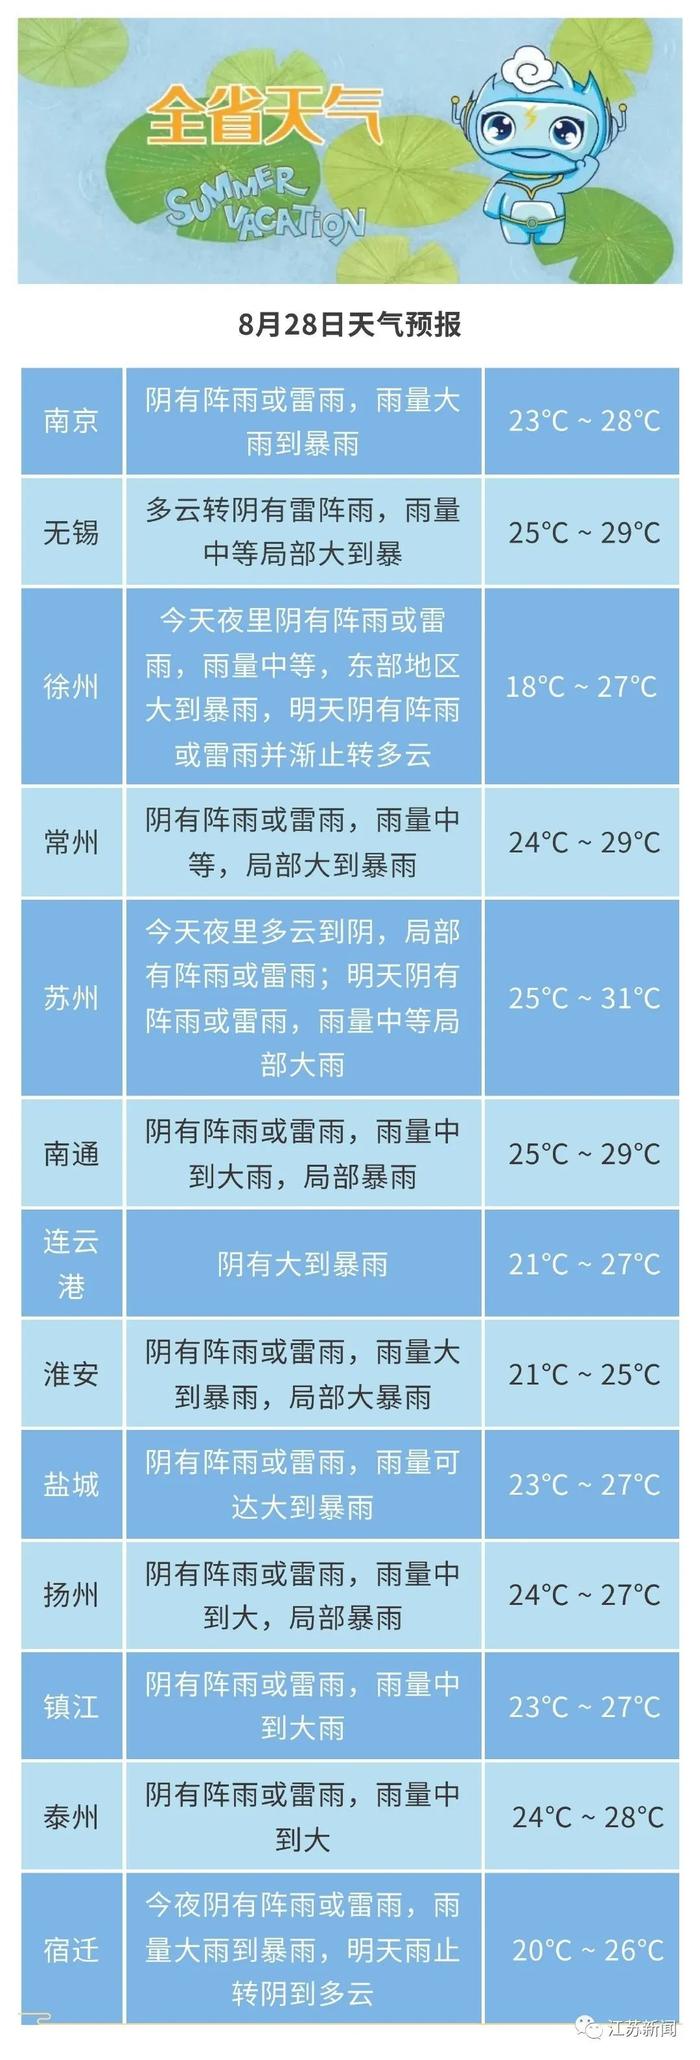 今日详细预报95江苏共有23条天气预警正在生效截至9时40分8月30日08